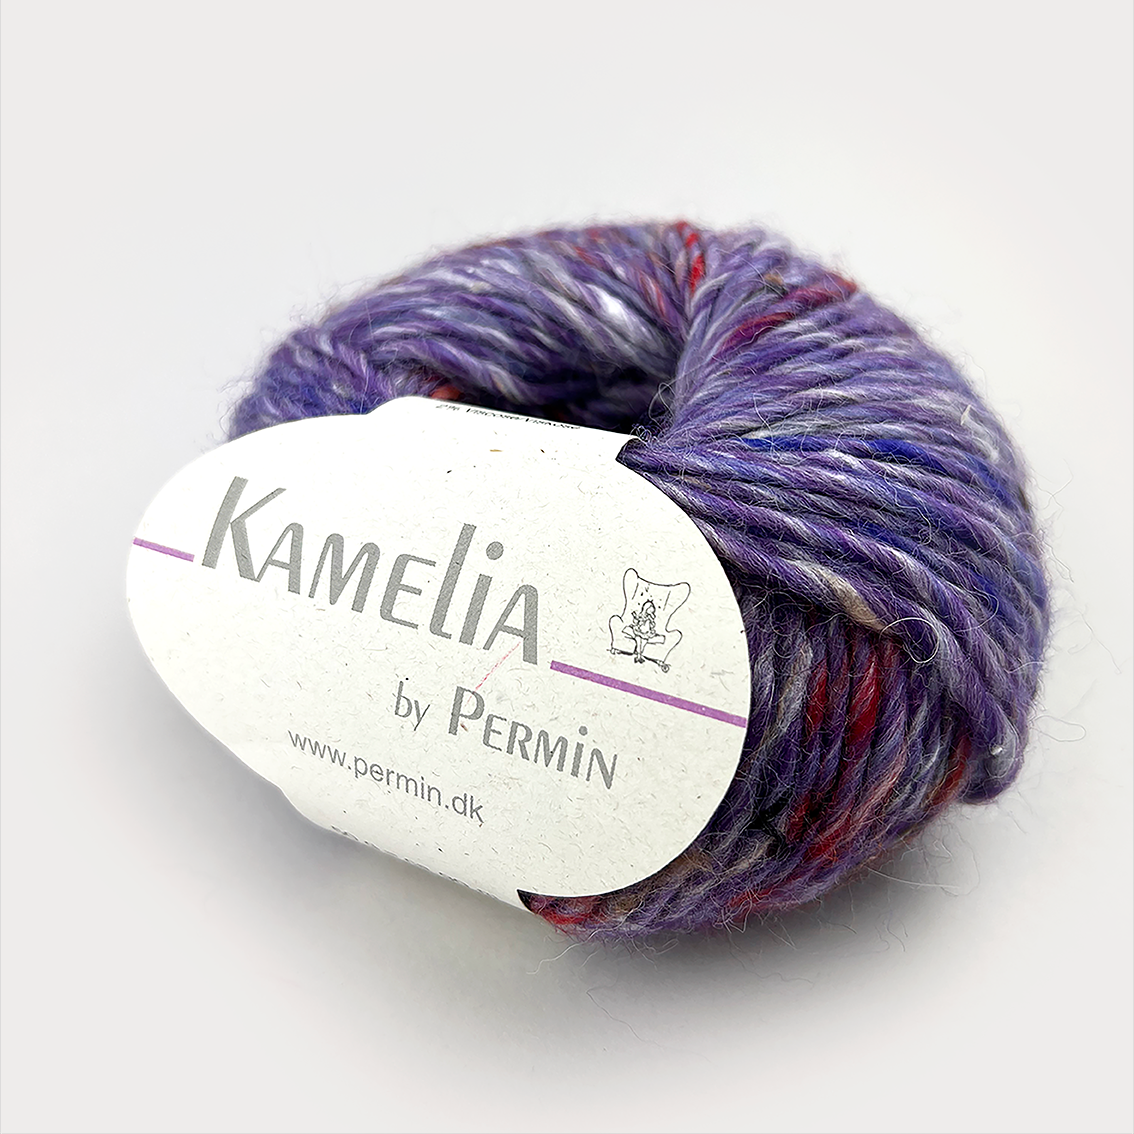 Kamelia | by Permin